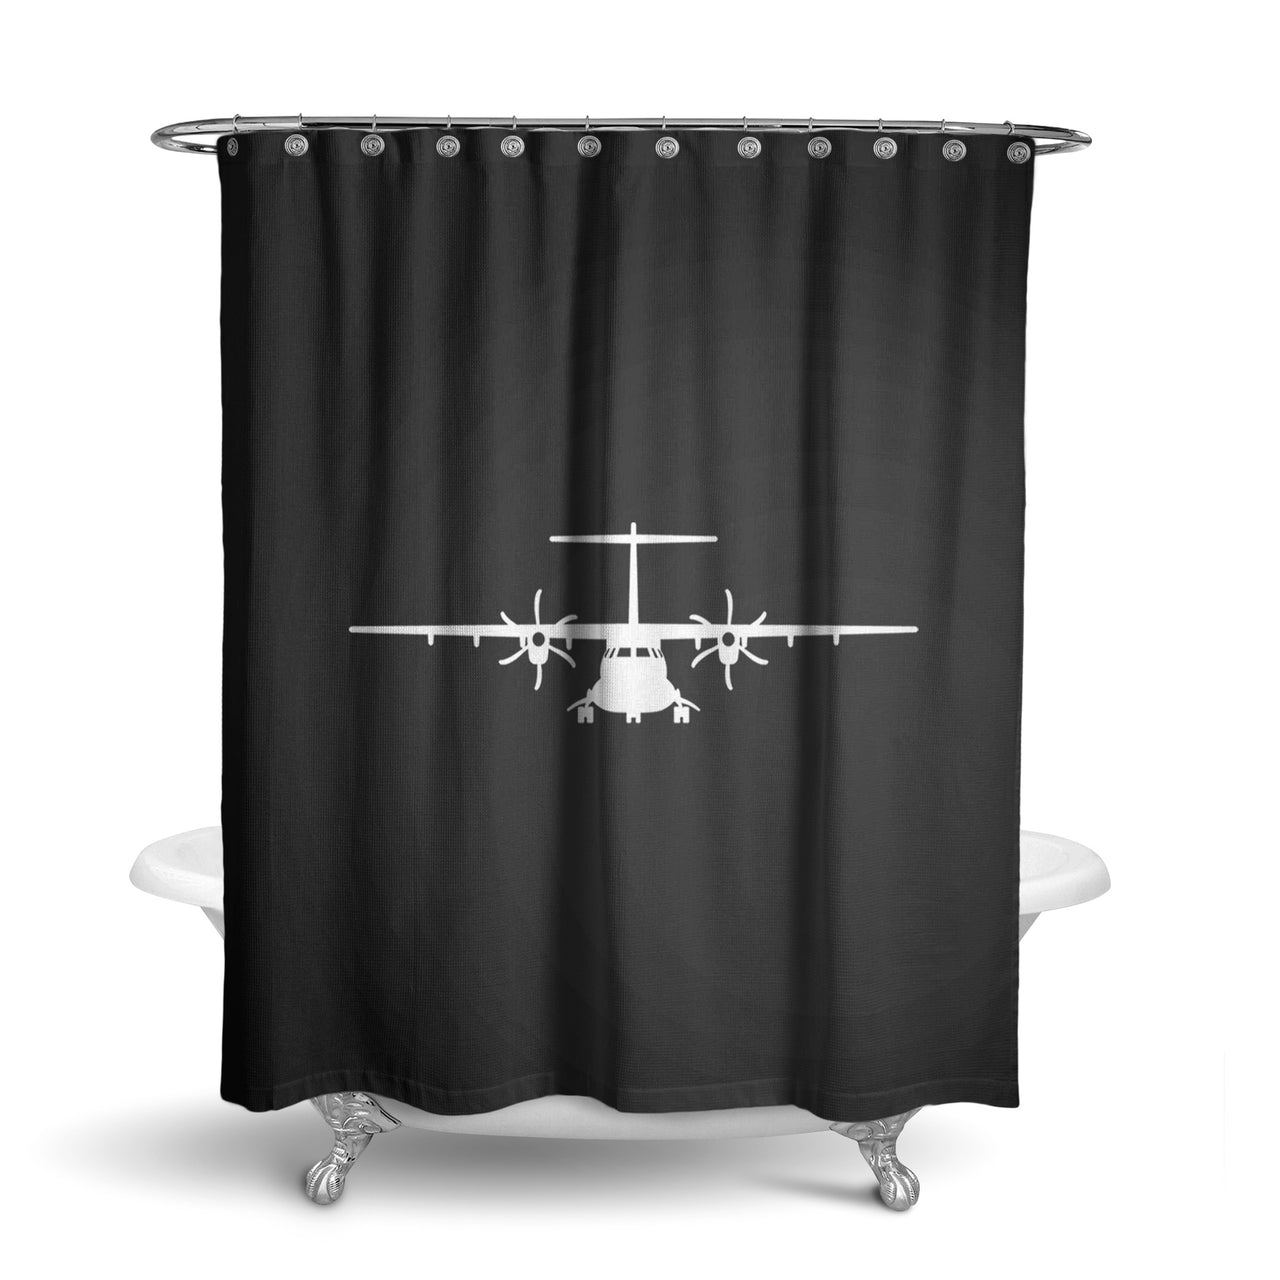 ATR-72 Silhouette Designed Shower Curtains